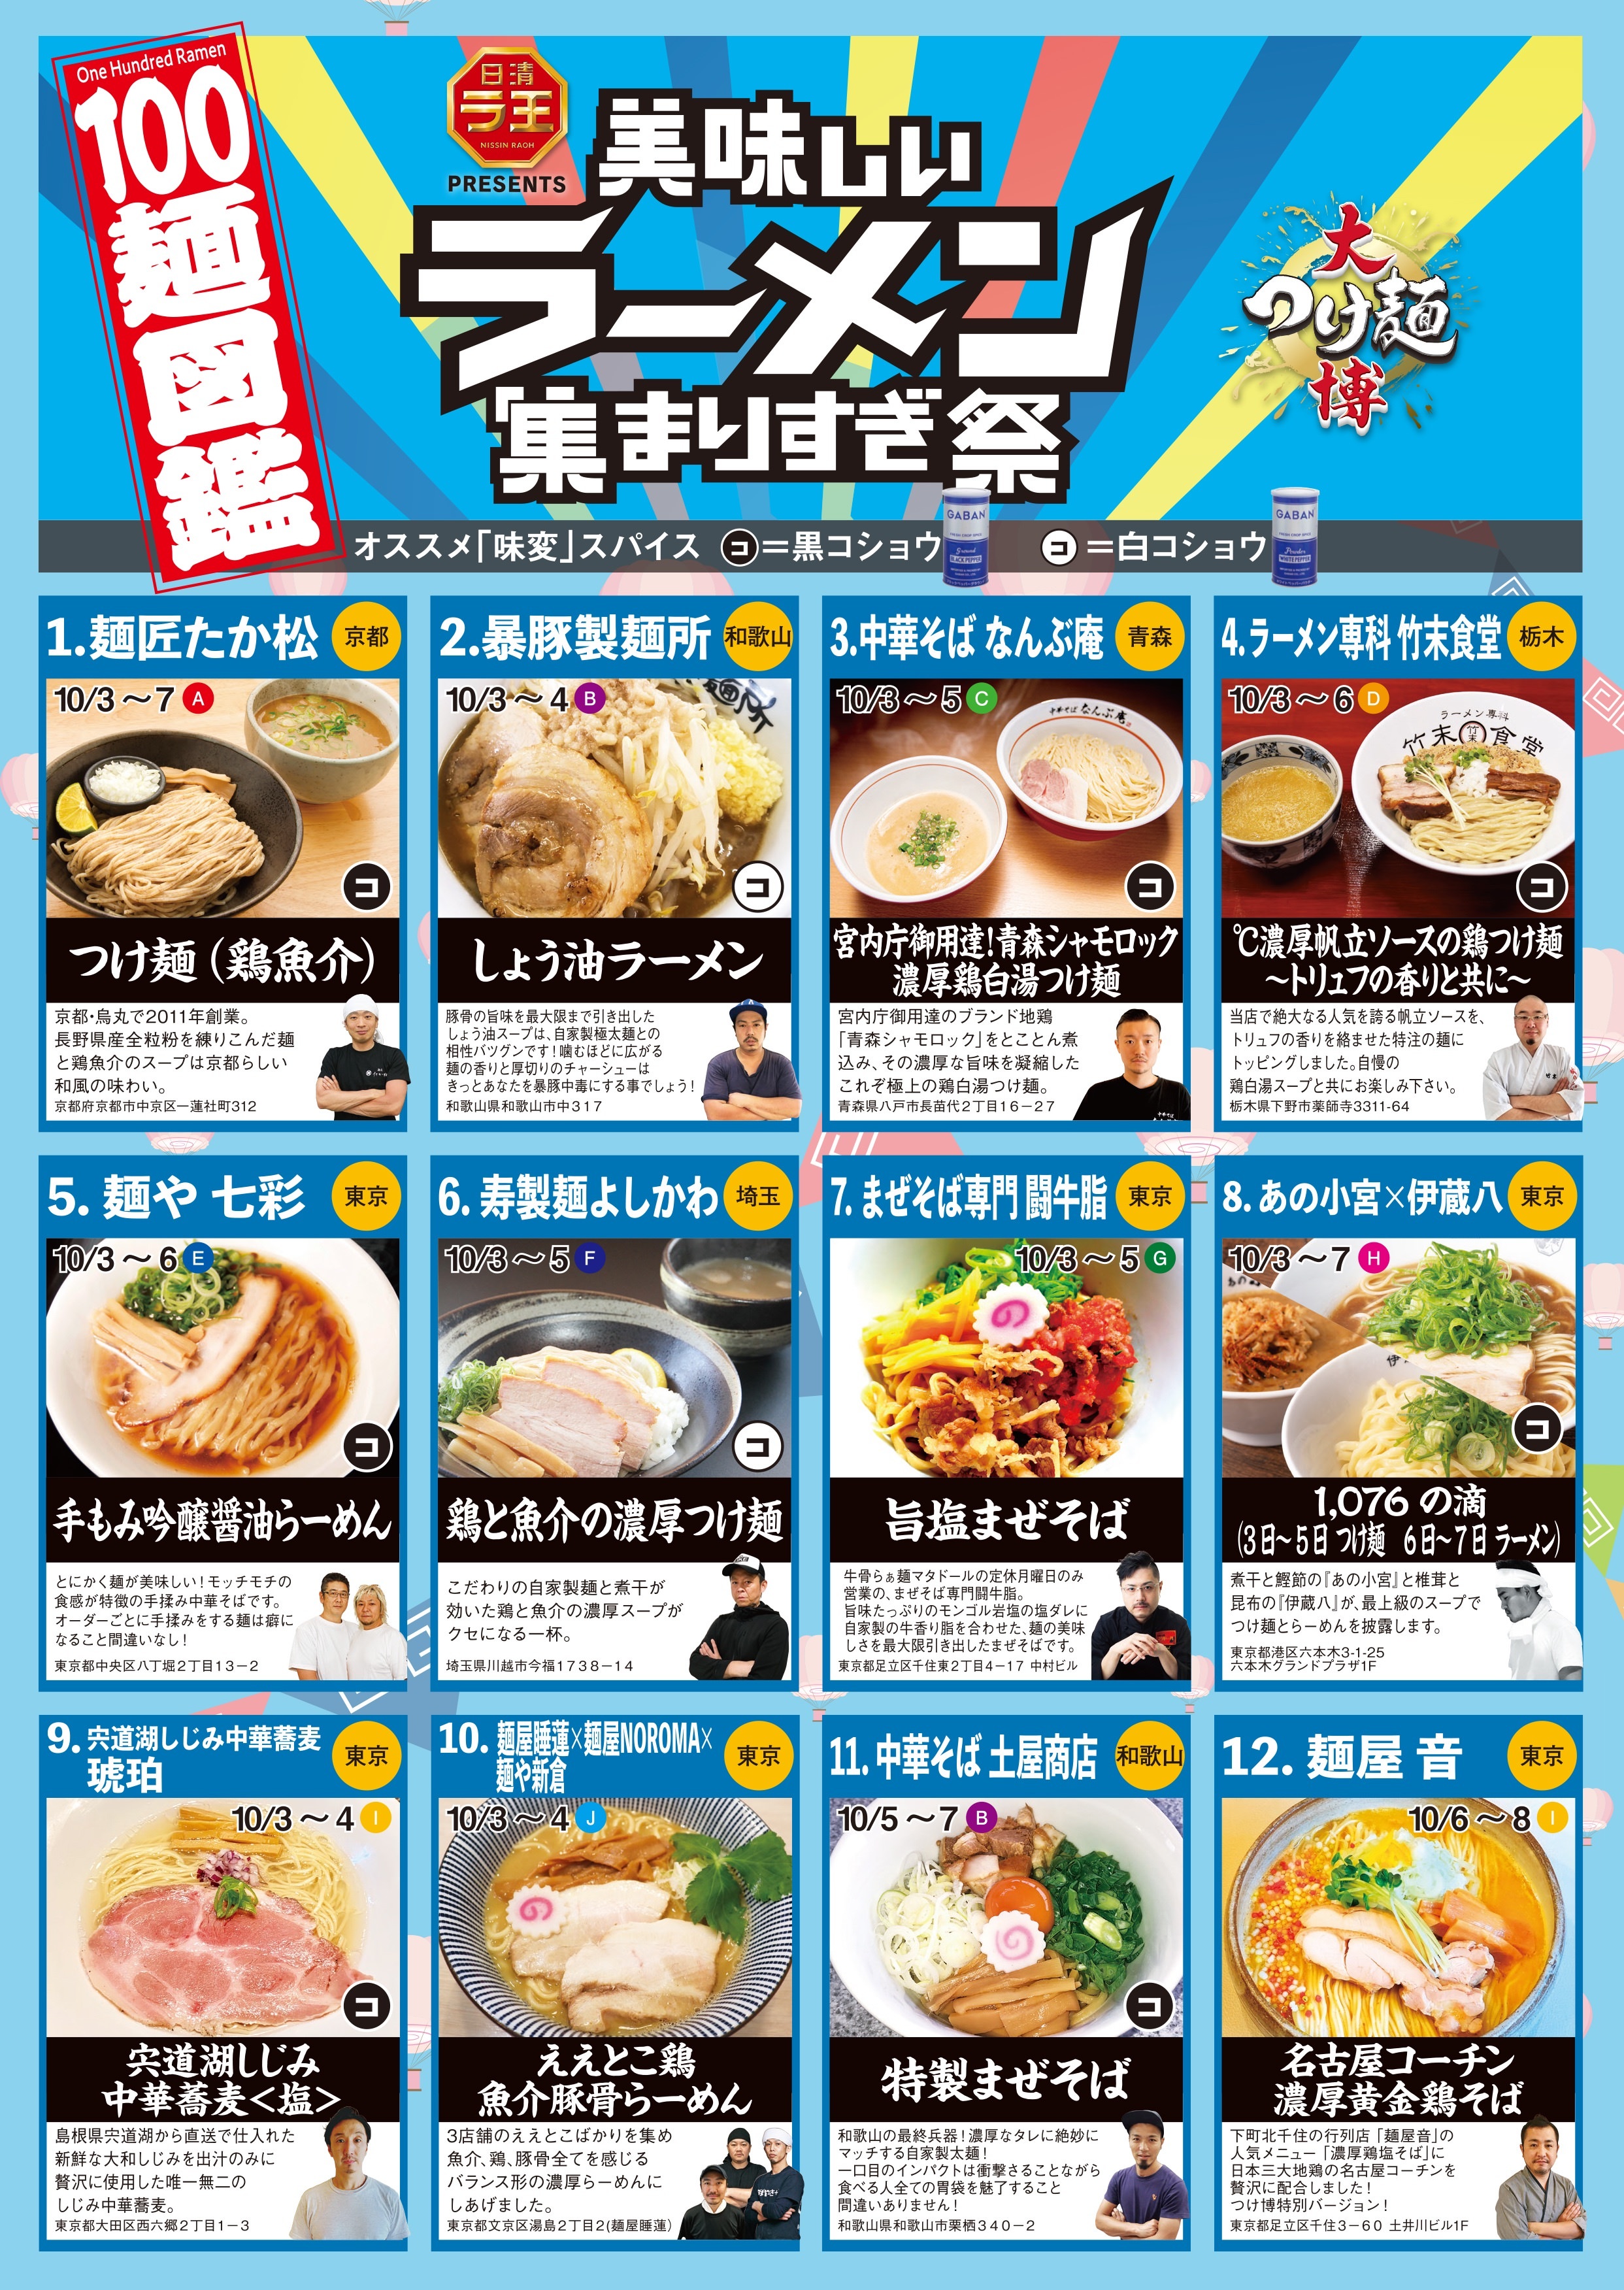 神奈川県立保健福祉大学の食育サークル「シーラボ☆」と共同開発 大学生が自分たちで開発した商品を店頭で販売